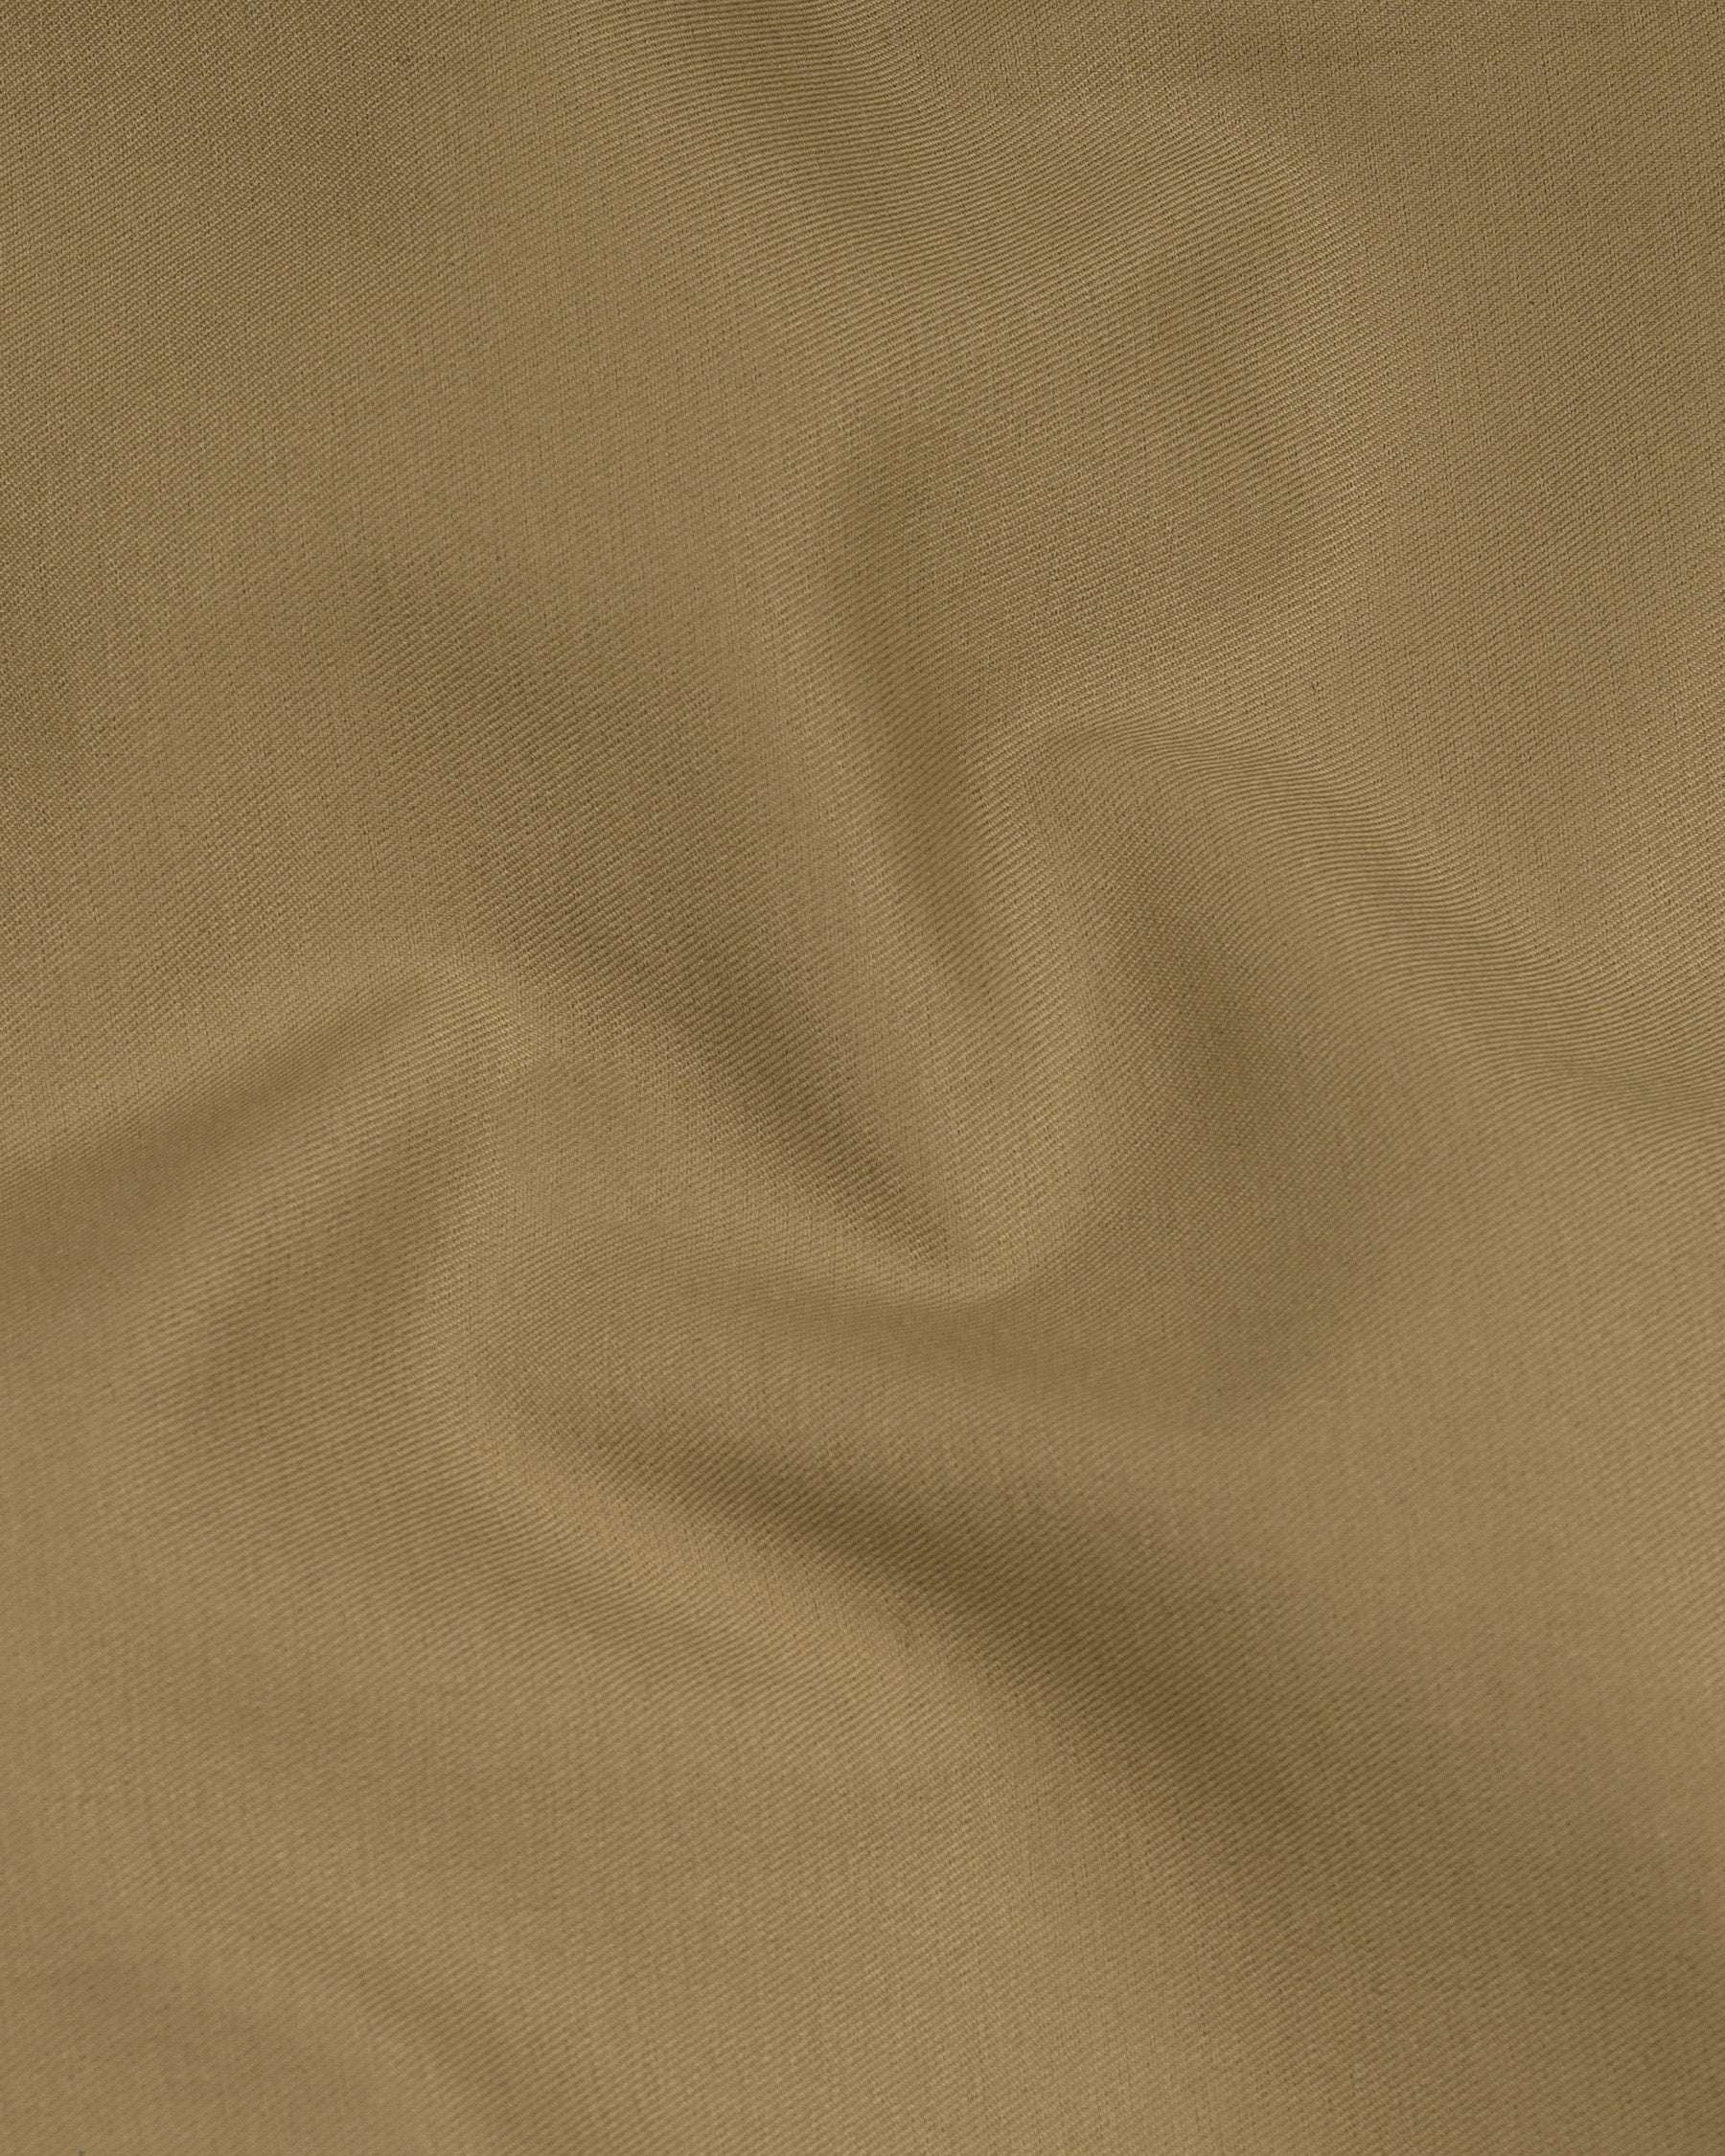 Shadow Brown Premium Cotton Pant T2132-28, T2132-30, T2132-32, T2132-34, T2132-36, T2132-38, T2132-40, T2132-42, T2132-44